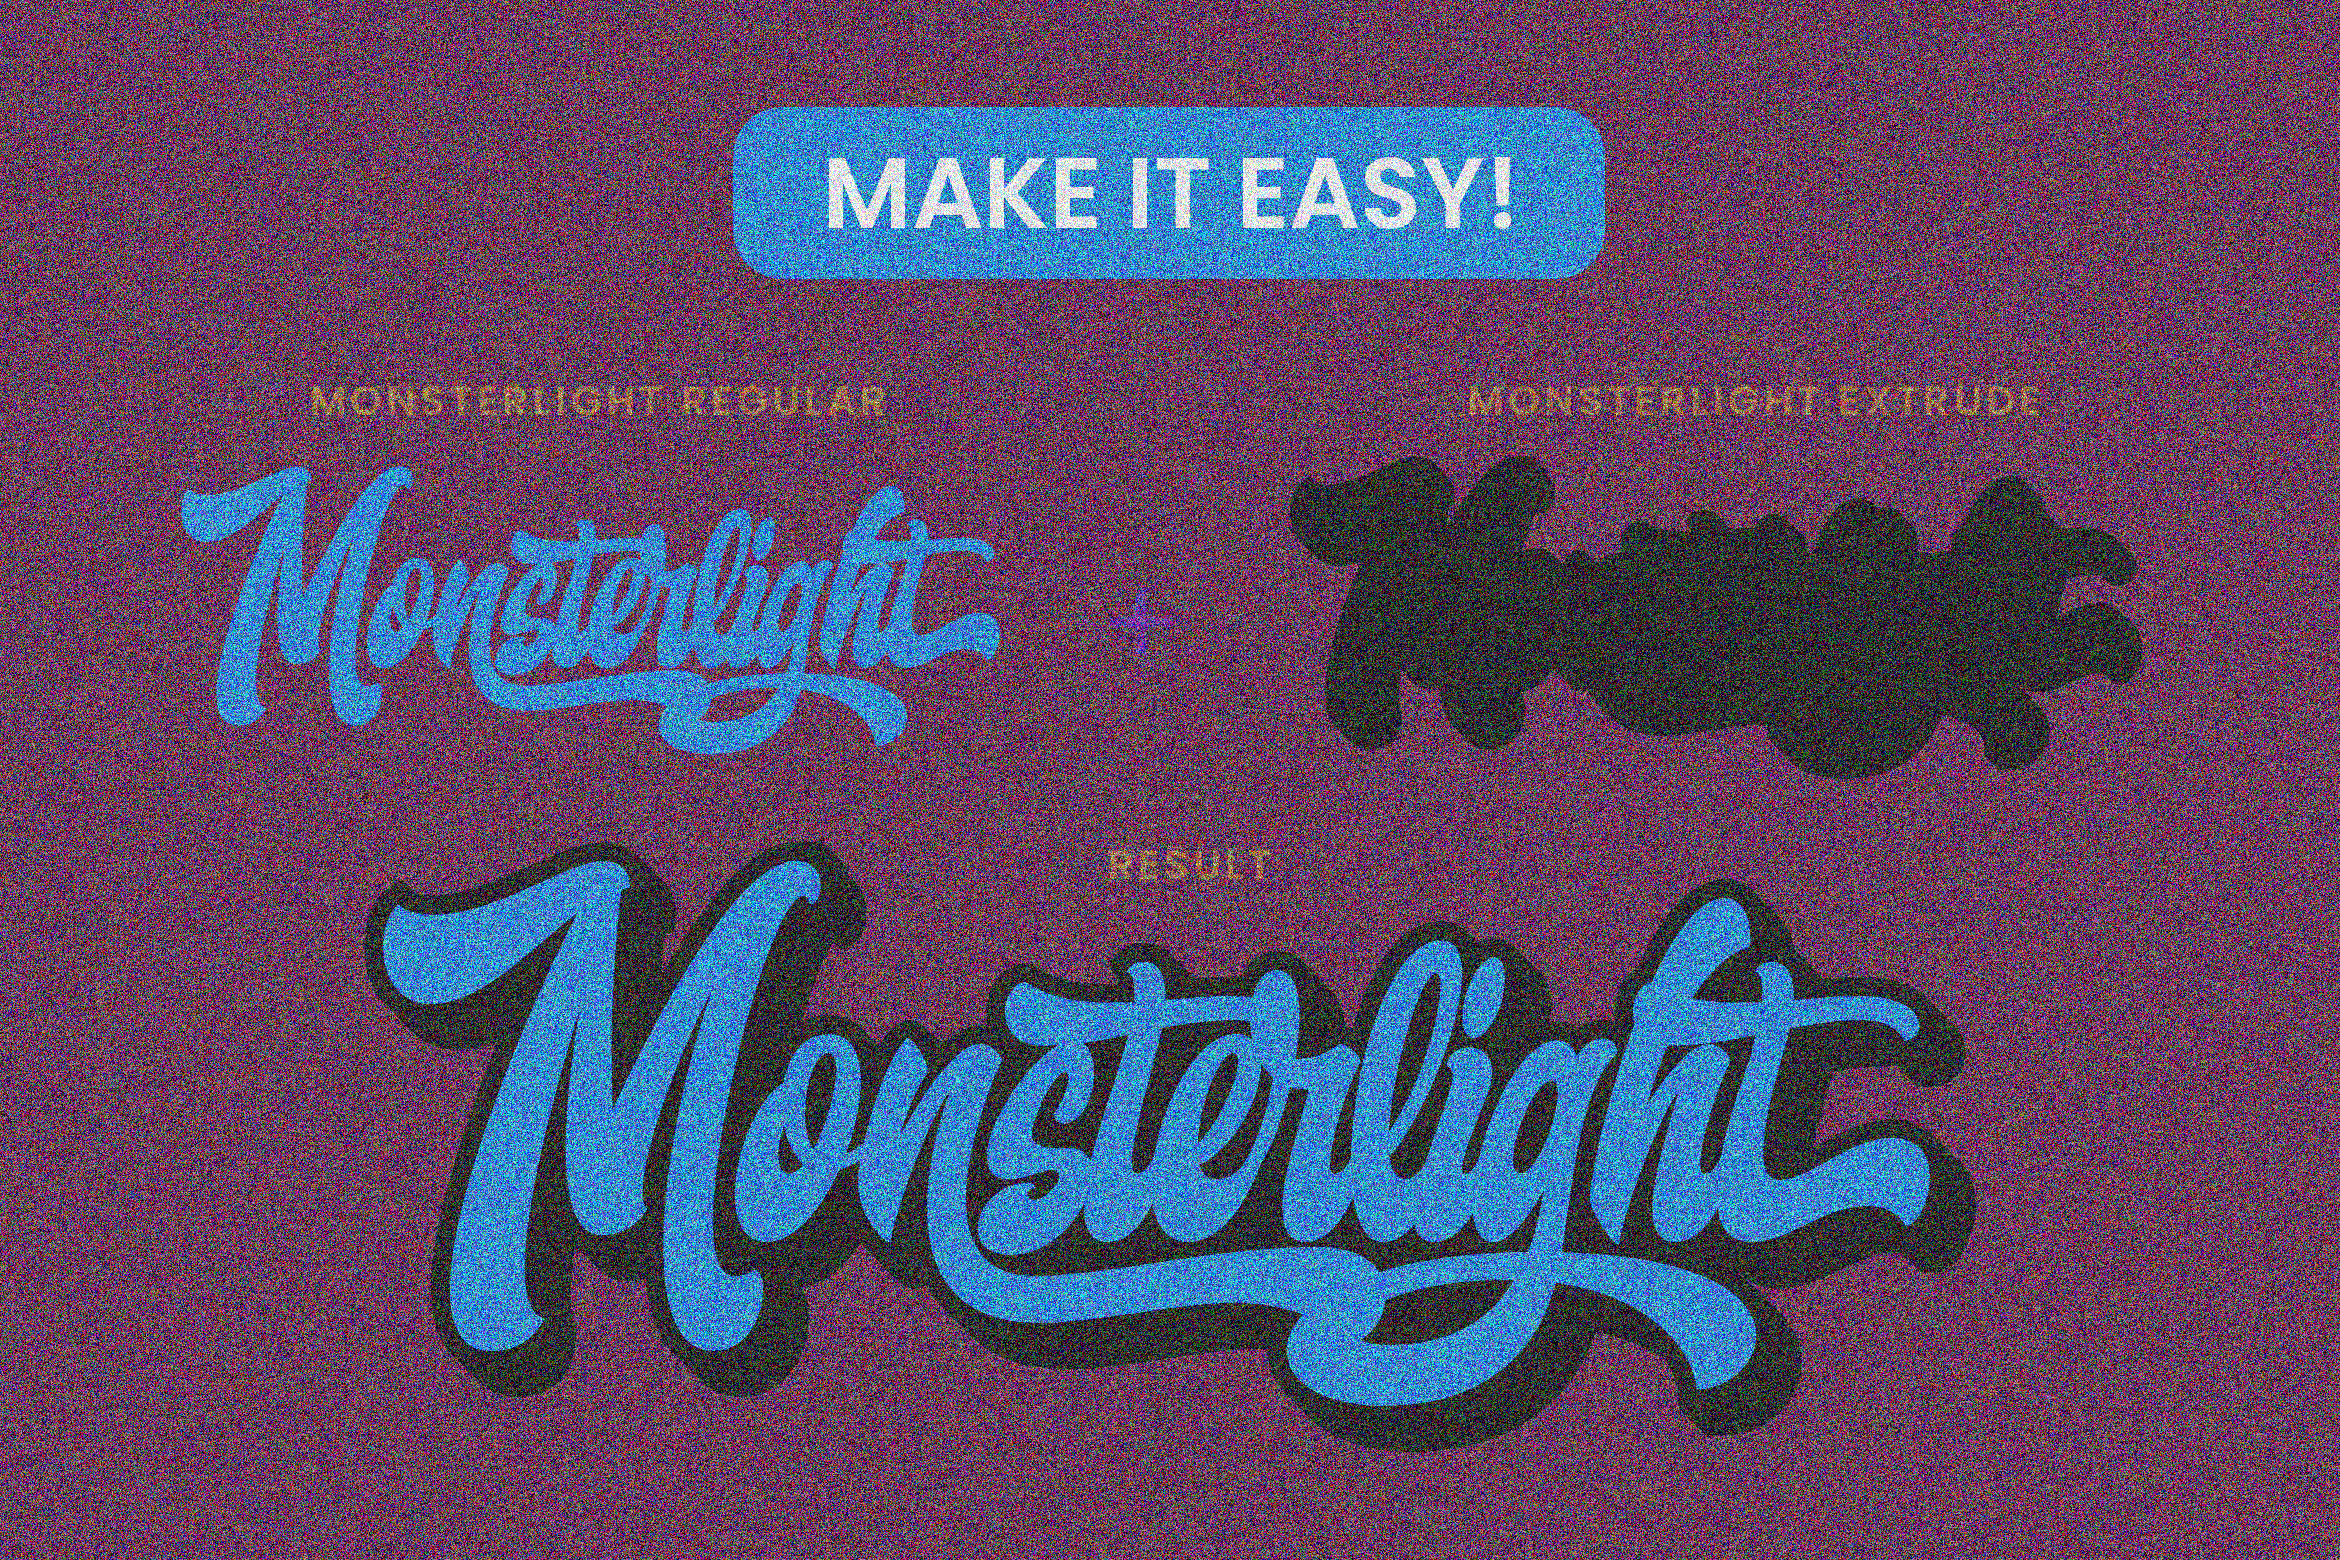 Monsterlight